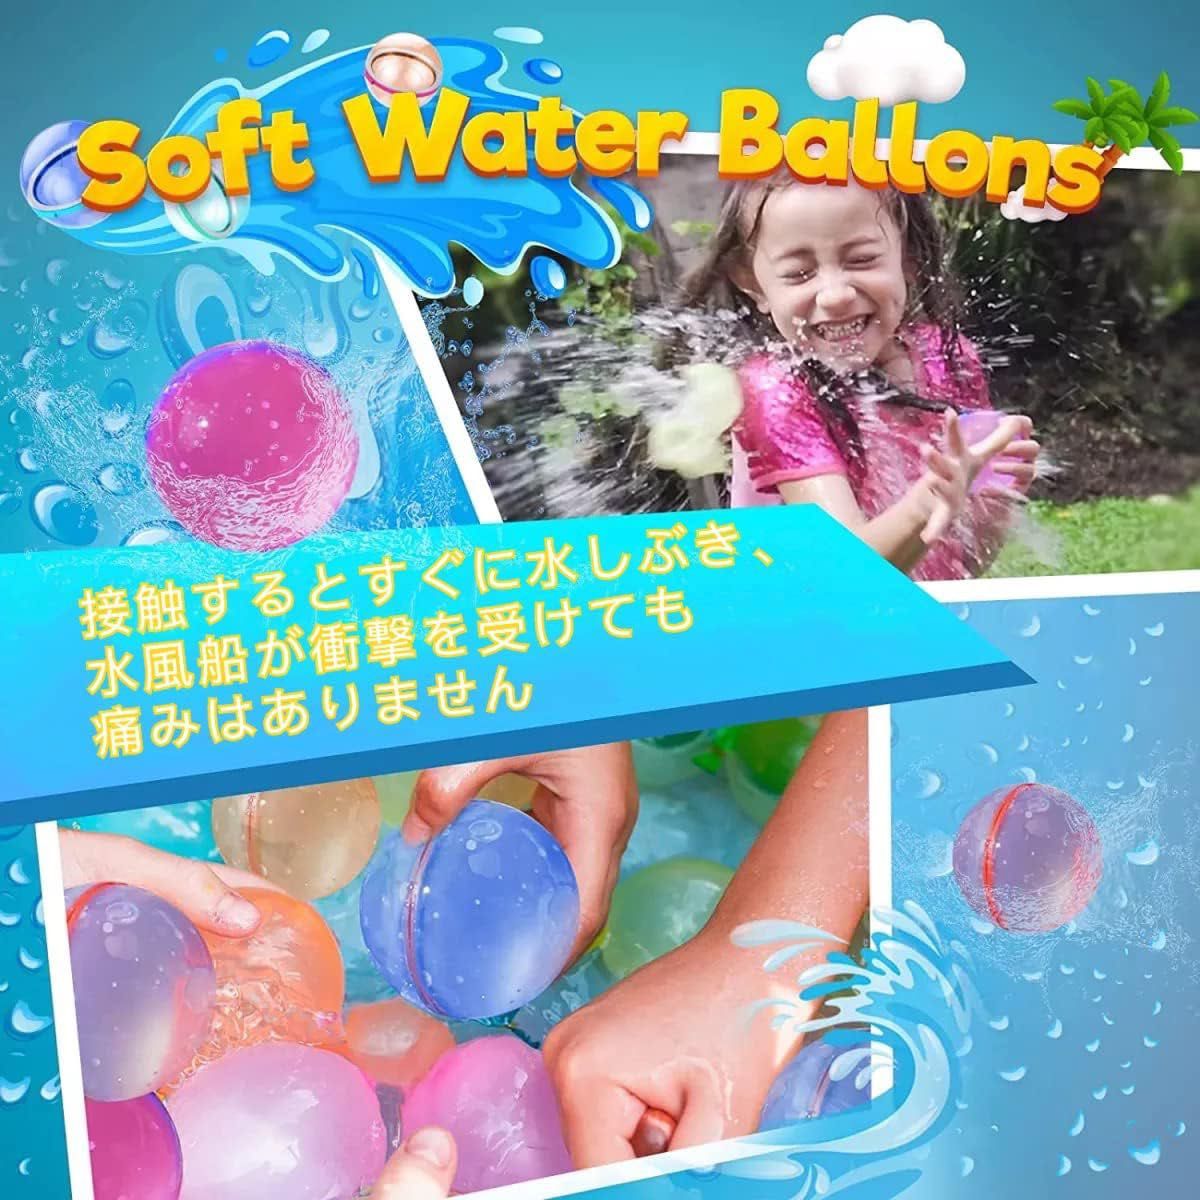 水風船 スプラッシュボール 再利用可能 自動式磁気リング開閉 セルフシール ウォーターゲーム 夏祭り イベント用品 (6色) 